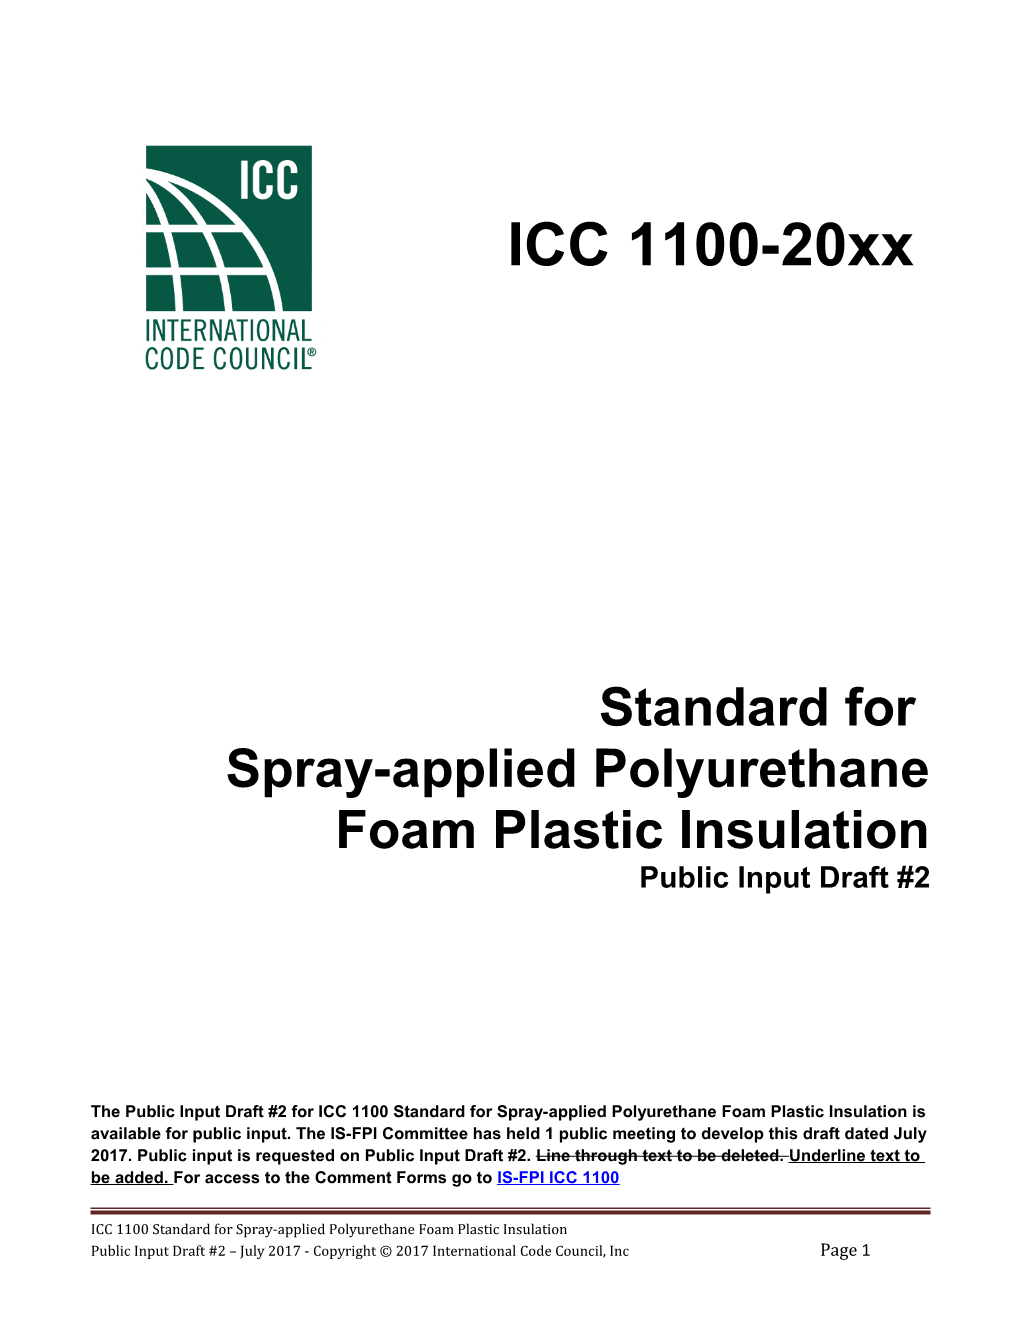 Spray-Applied Polyurethane Foam Plastic Insulation